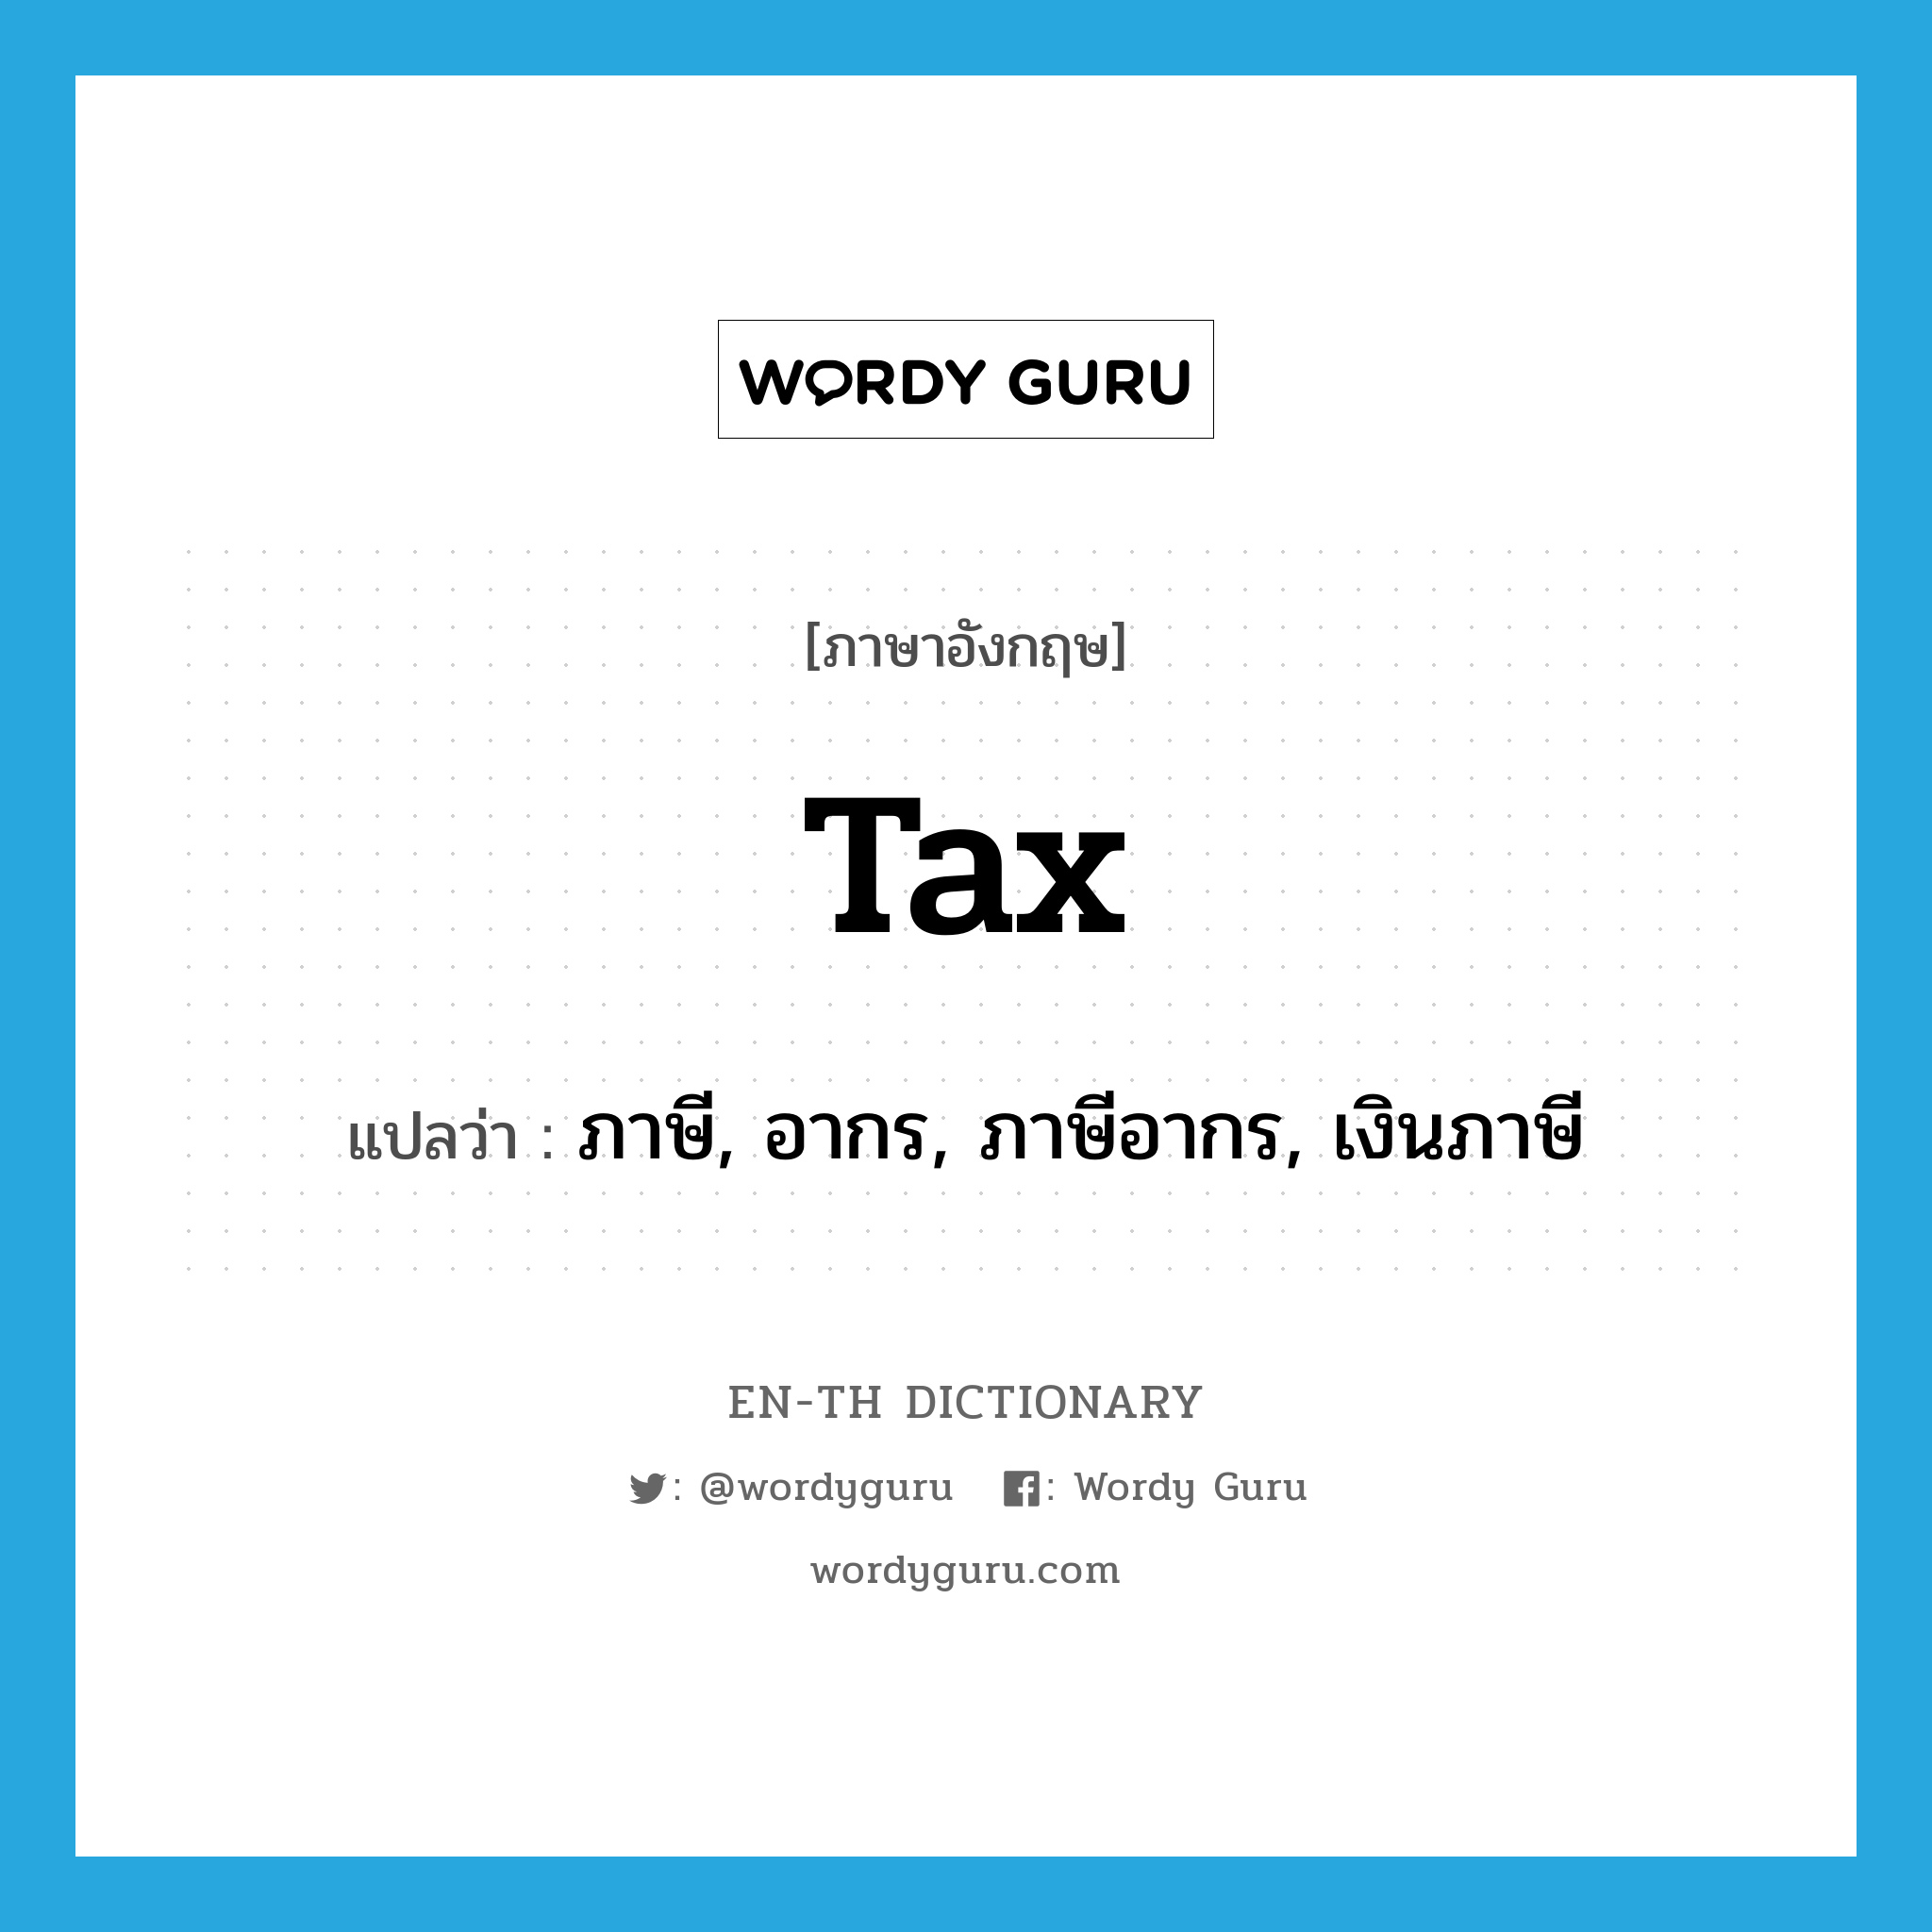 tax แปลว่า?, คำศัพท์ภาษาอังกฤษ tax แปลว่า ภาษี, อากร, ภาษีอากร, เงินภาษี ประเภท N หมวด N